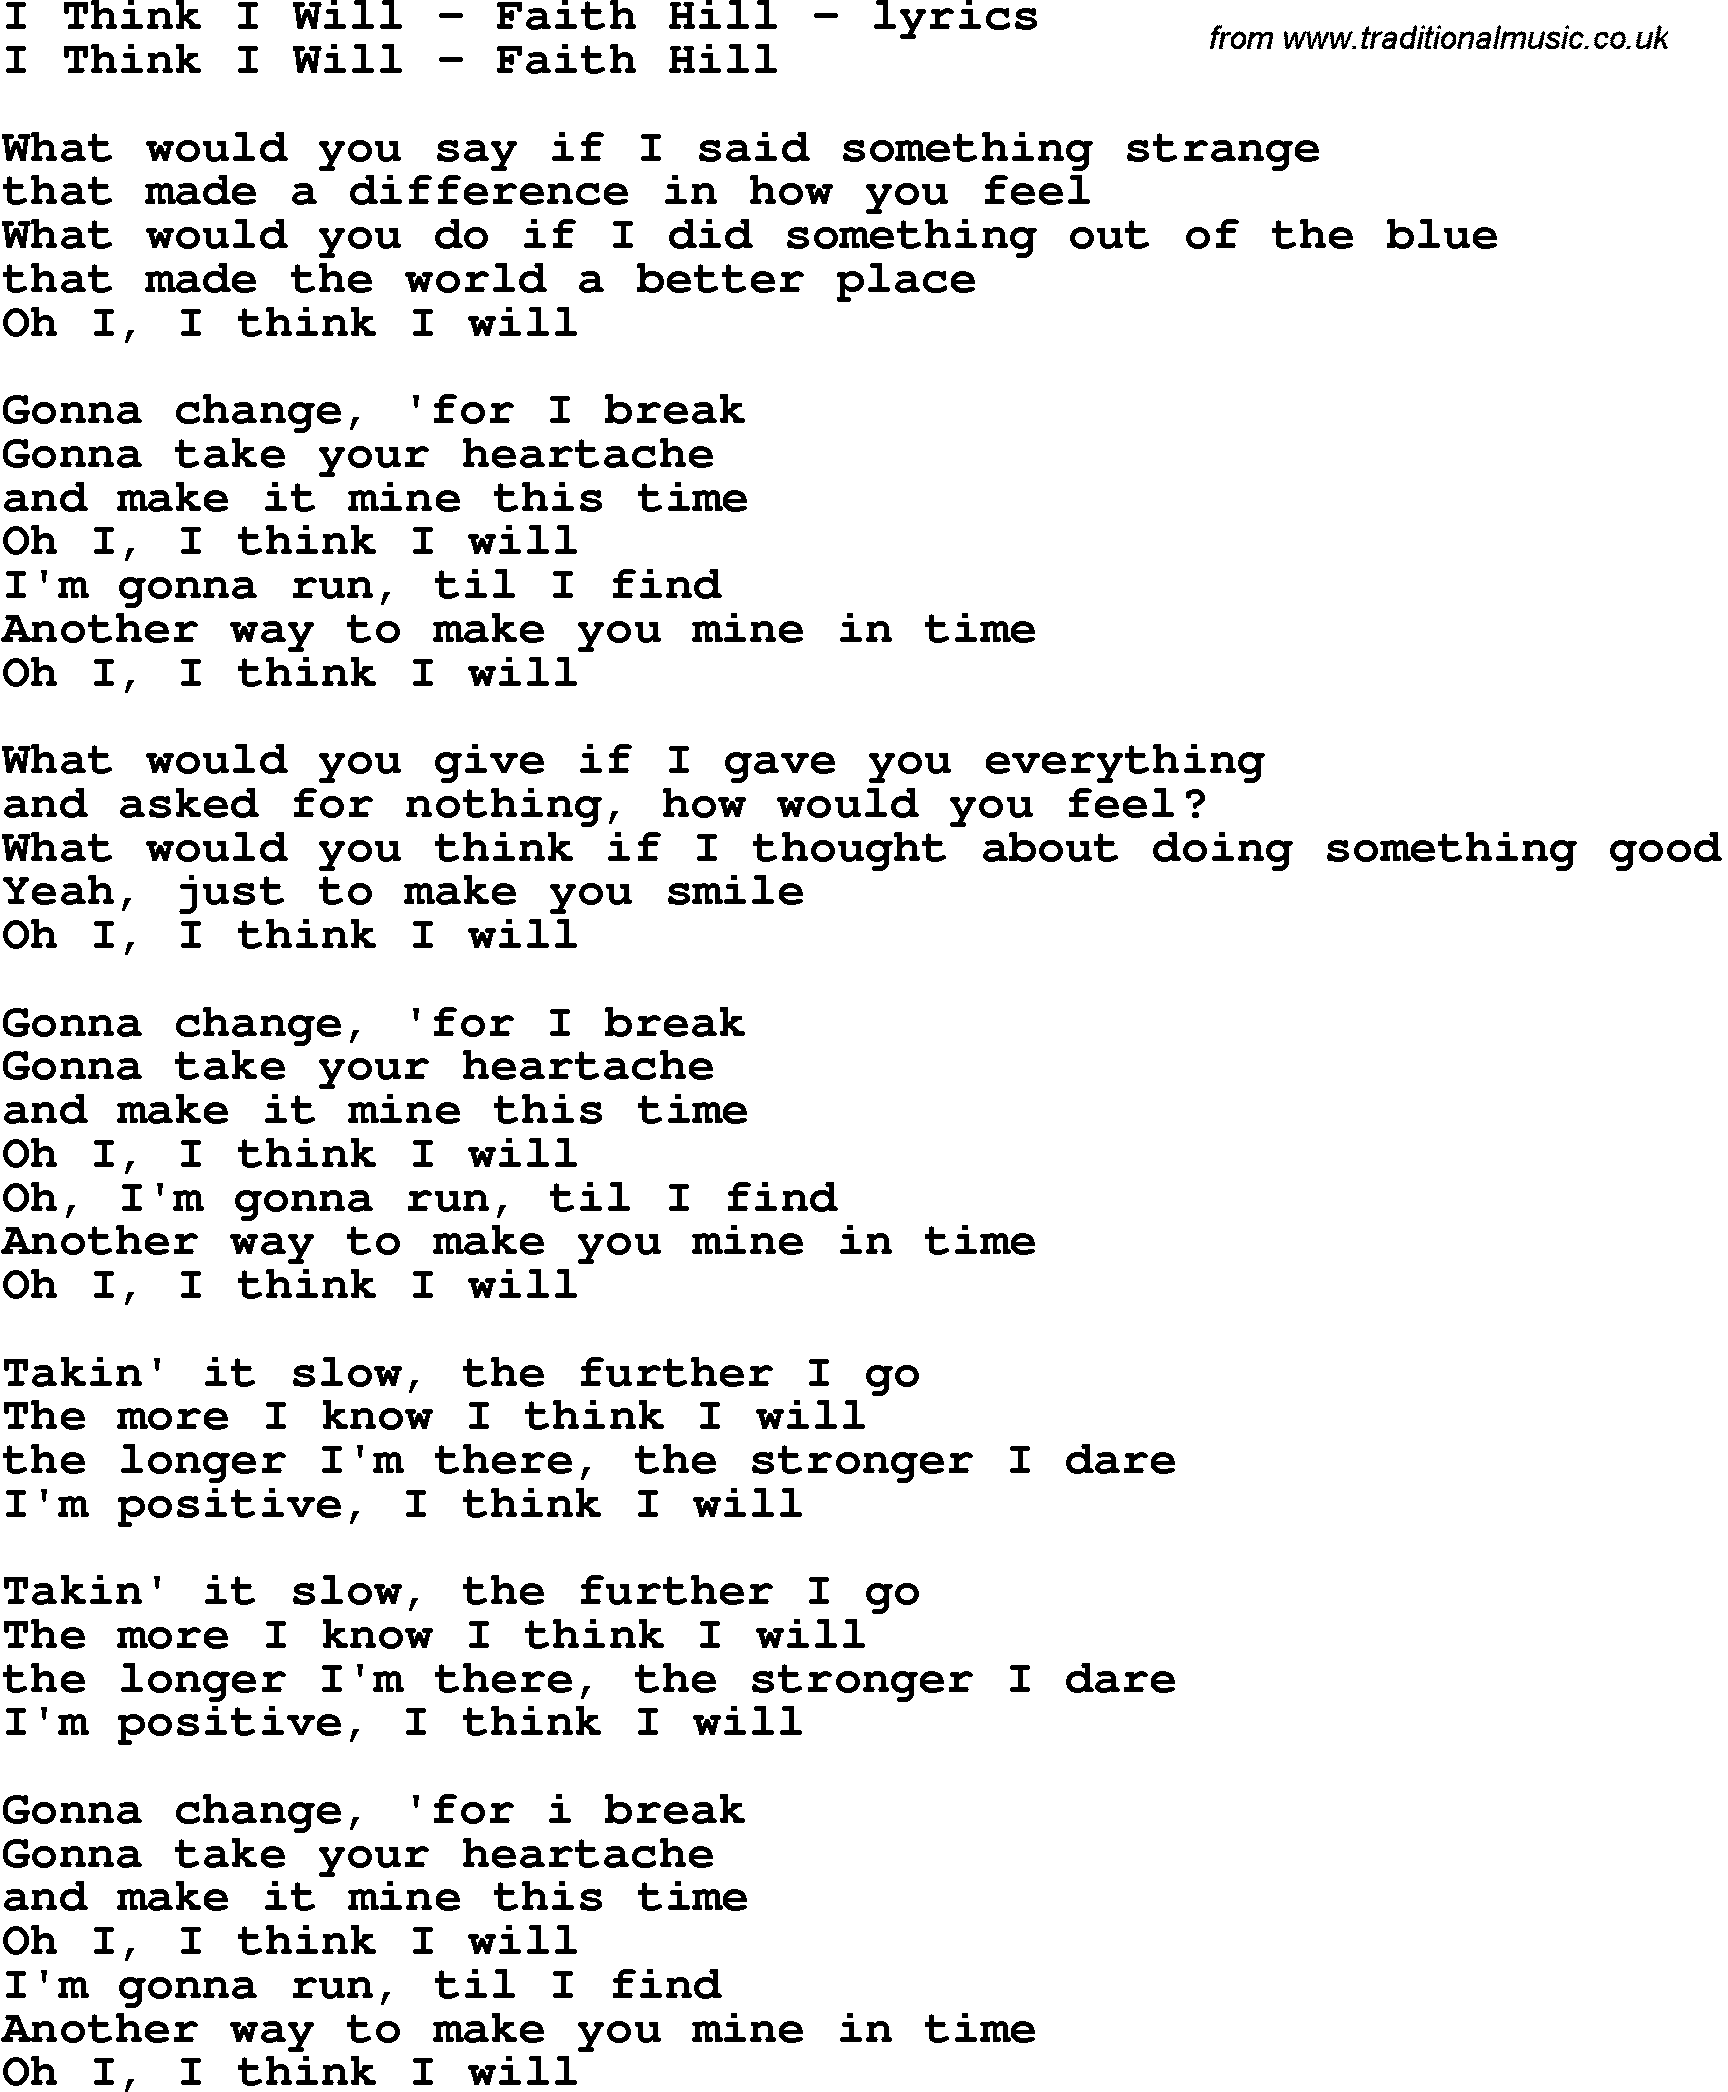 Love Song Lyrics for: I Think I Will - Faith Hill